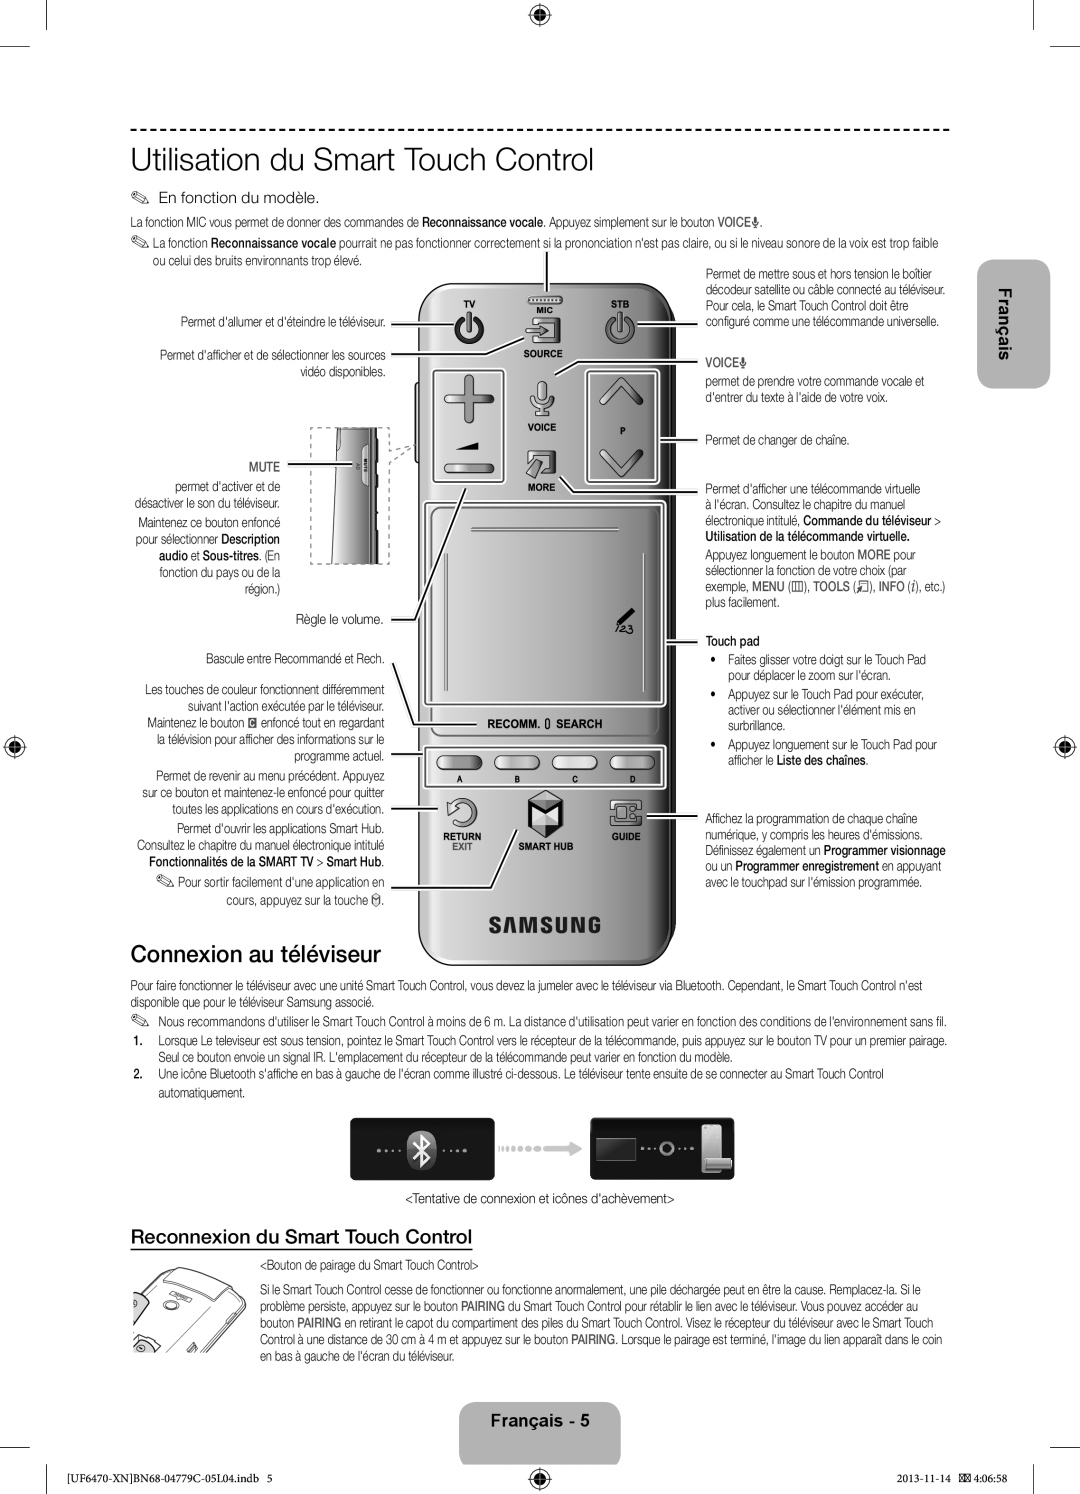 Samsung UE55F6510SSXZF Utilisation du Smart Touch Control, Connexion au téléviseur, Reconnexion du Smart Touch Control 